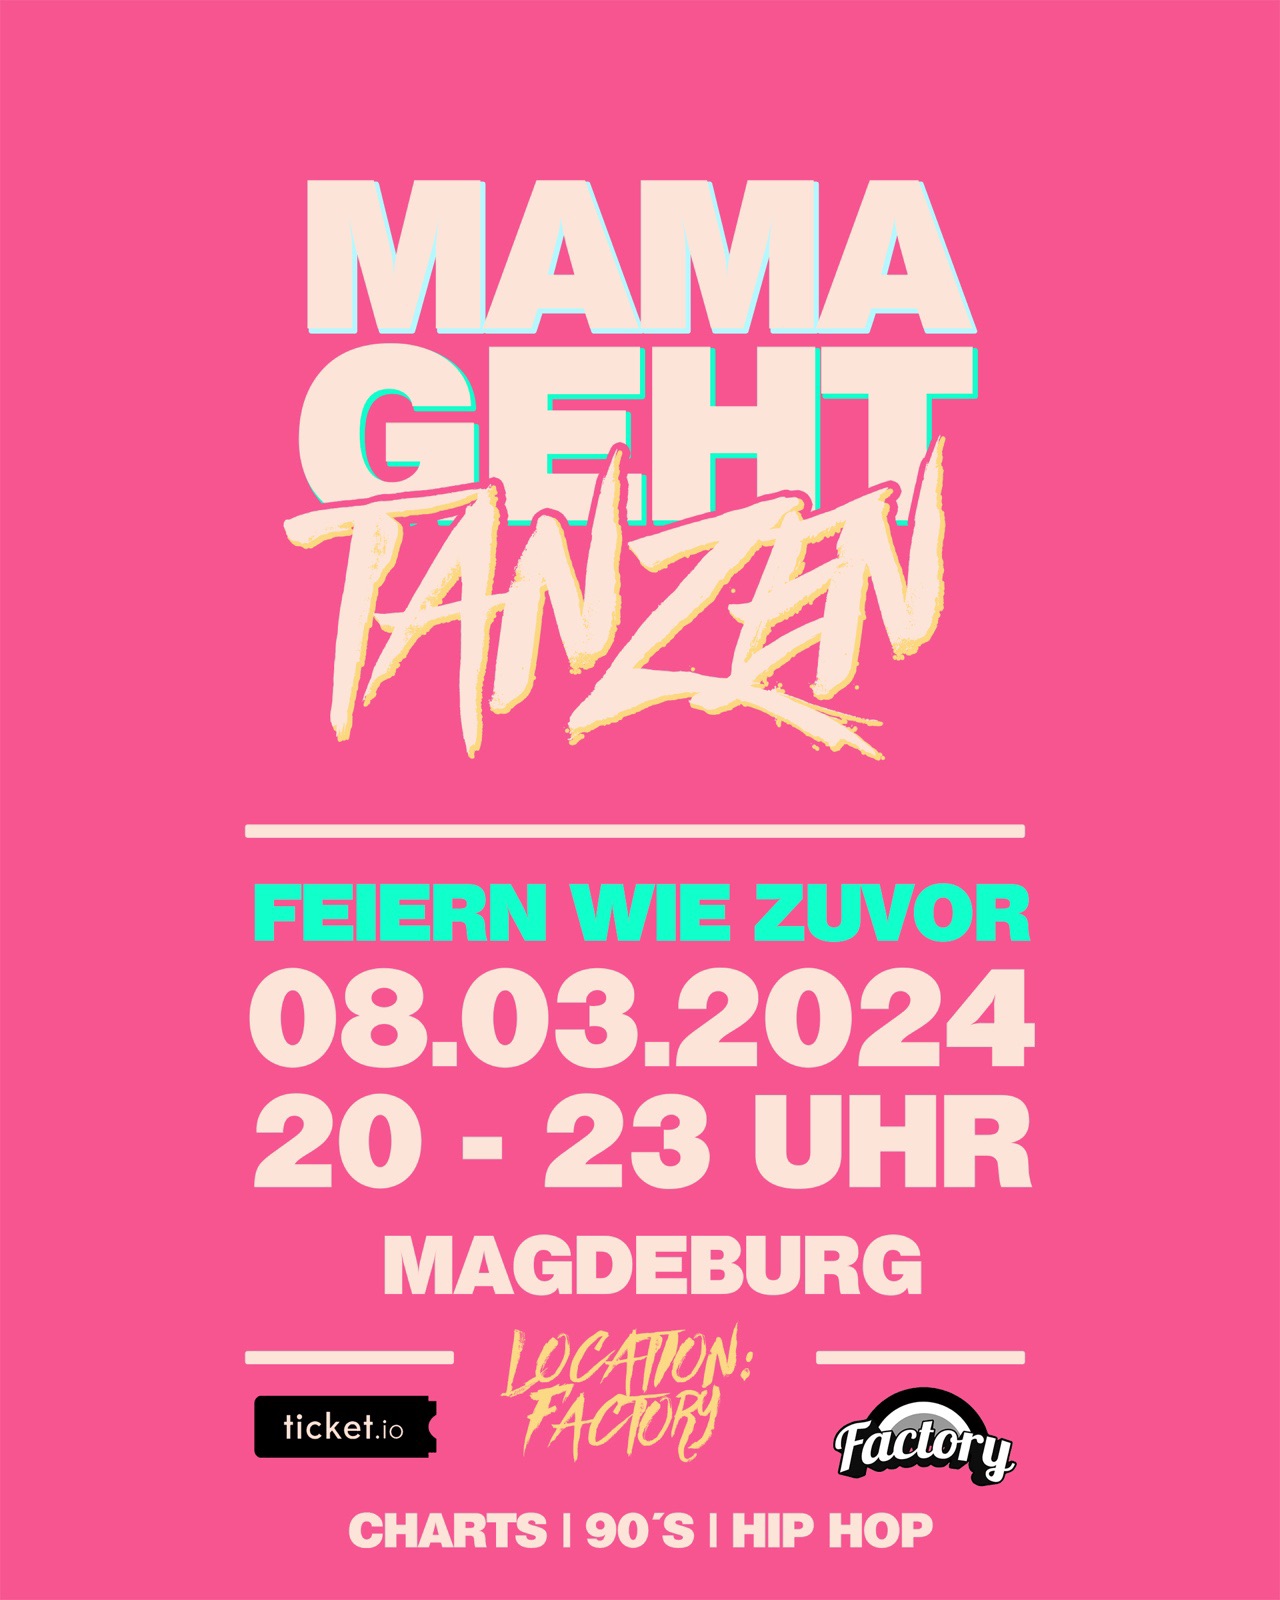 Mamagehttanzen Magdeburg // 08.03.2024 // AUSVERKAUFT!